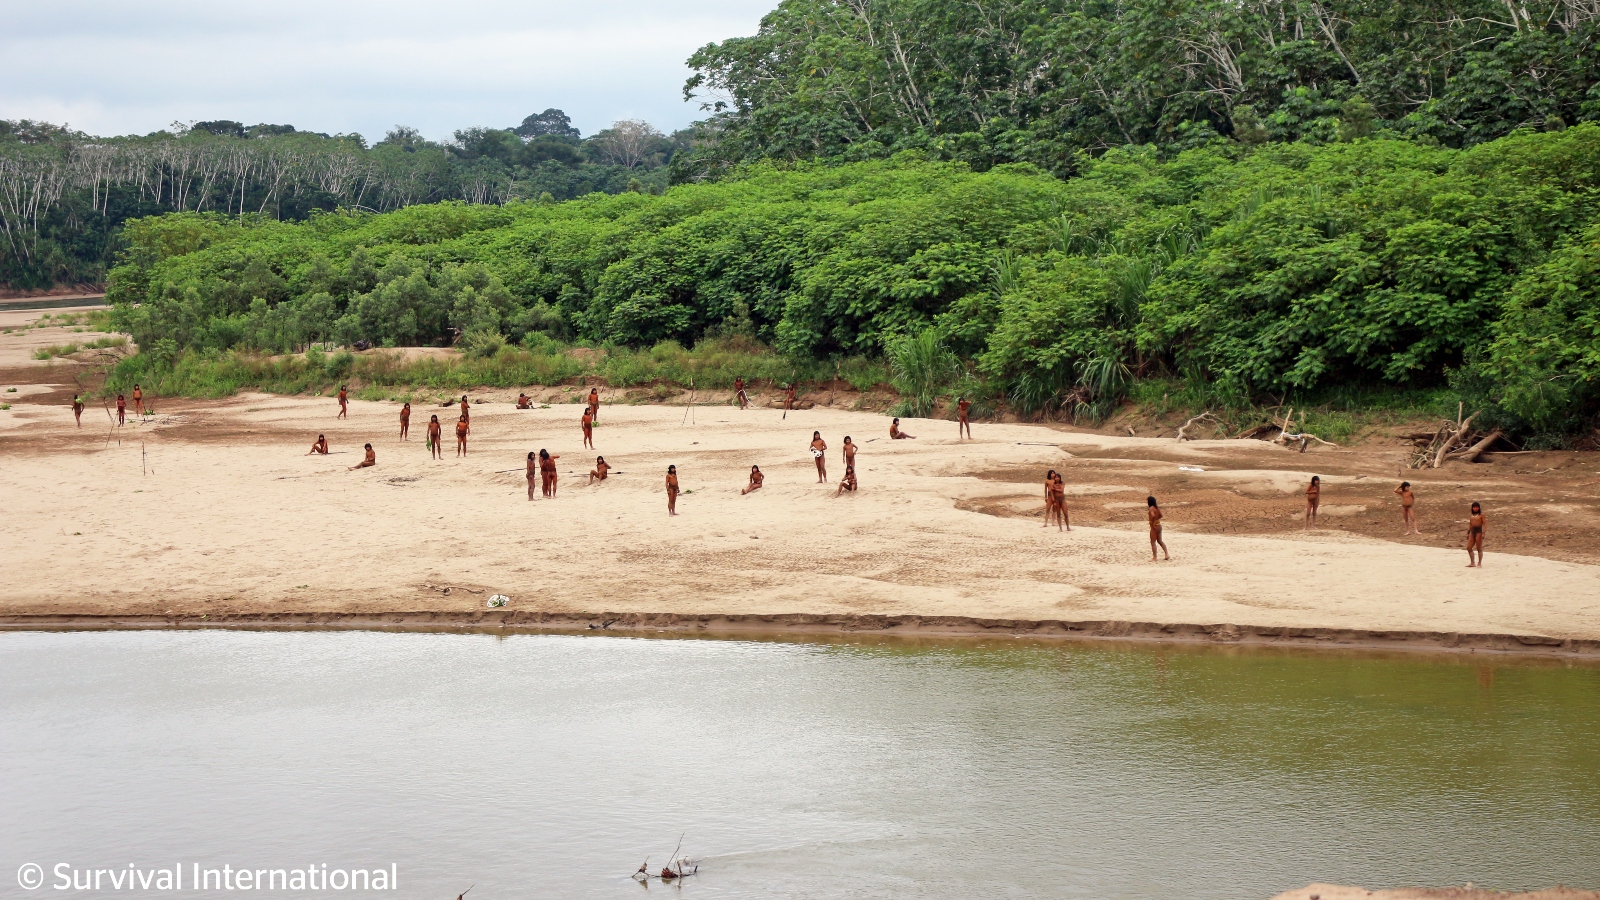 Se publican nuevas imágenes de una tribu desconectada en la Amazonía peruana